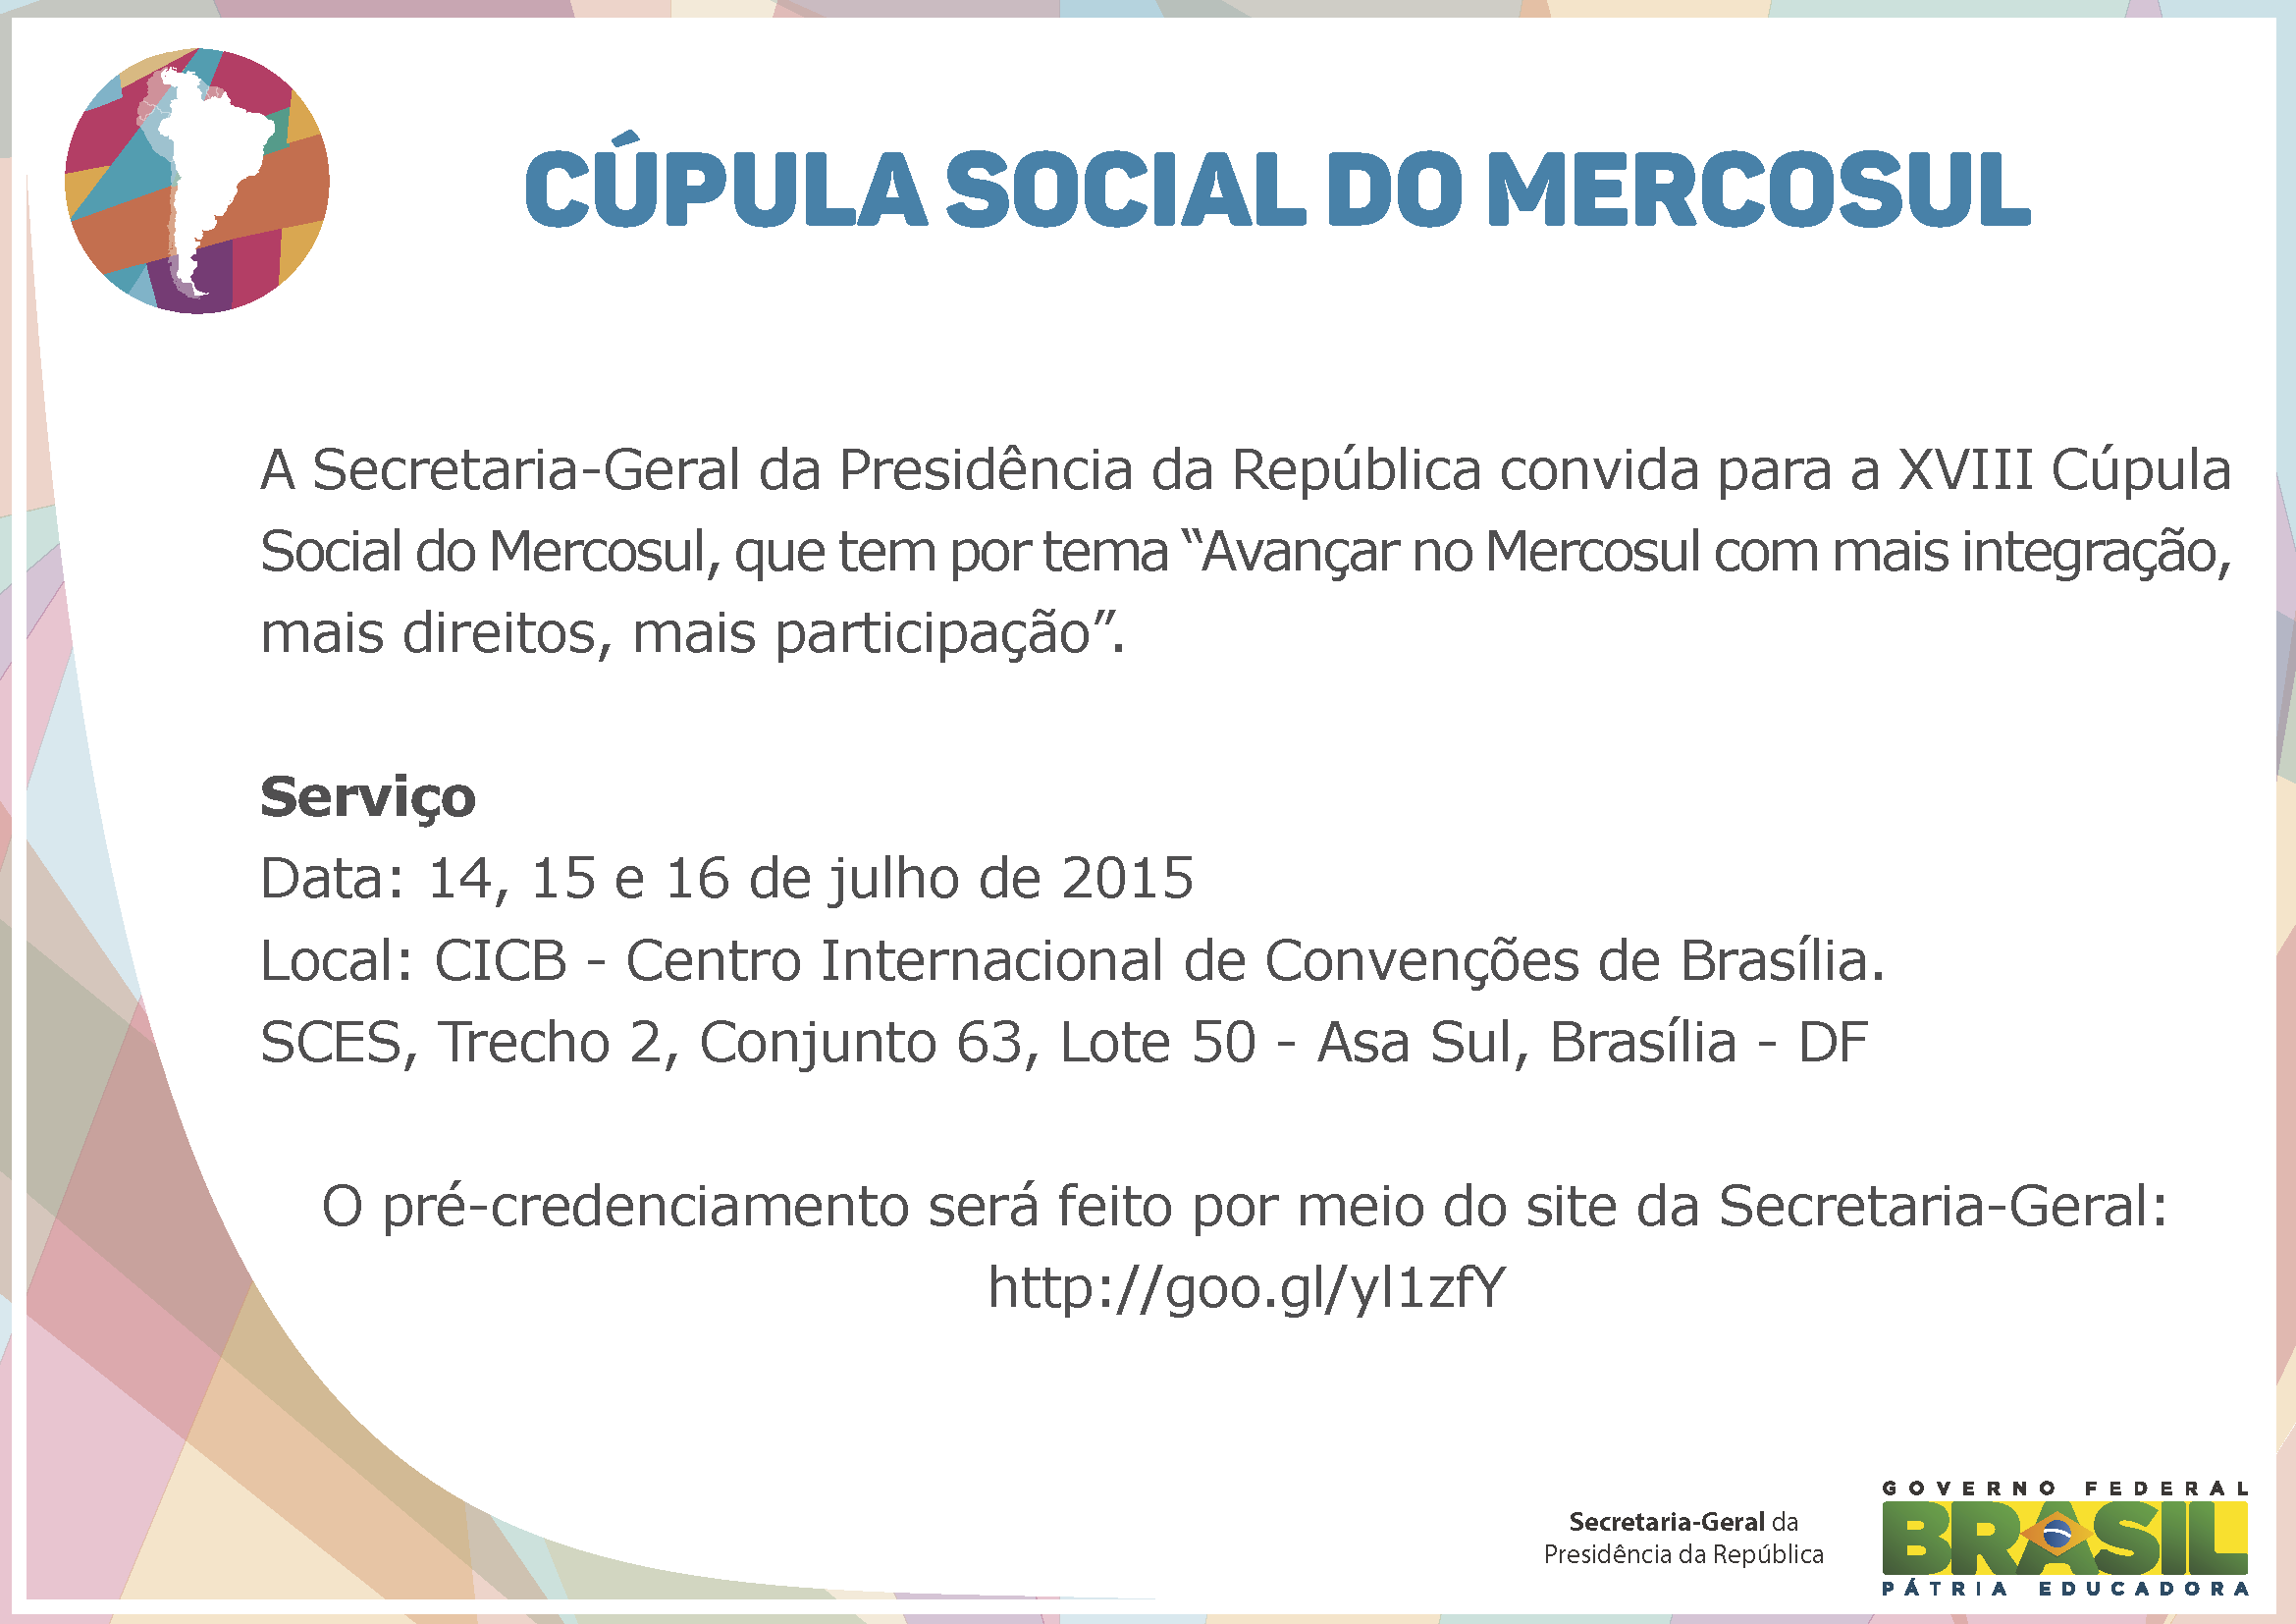 Cúpula Social do Mercosul